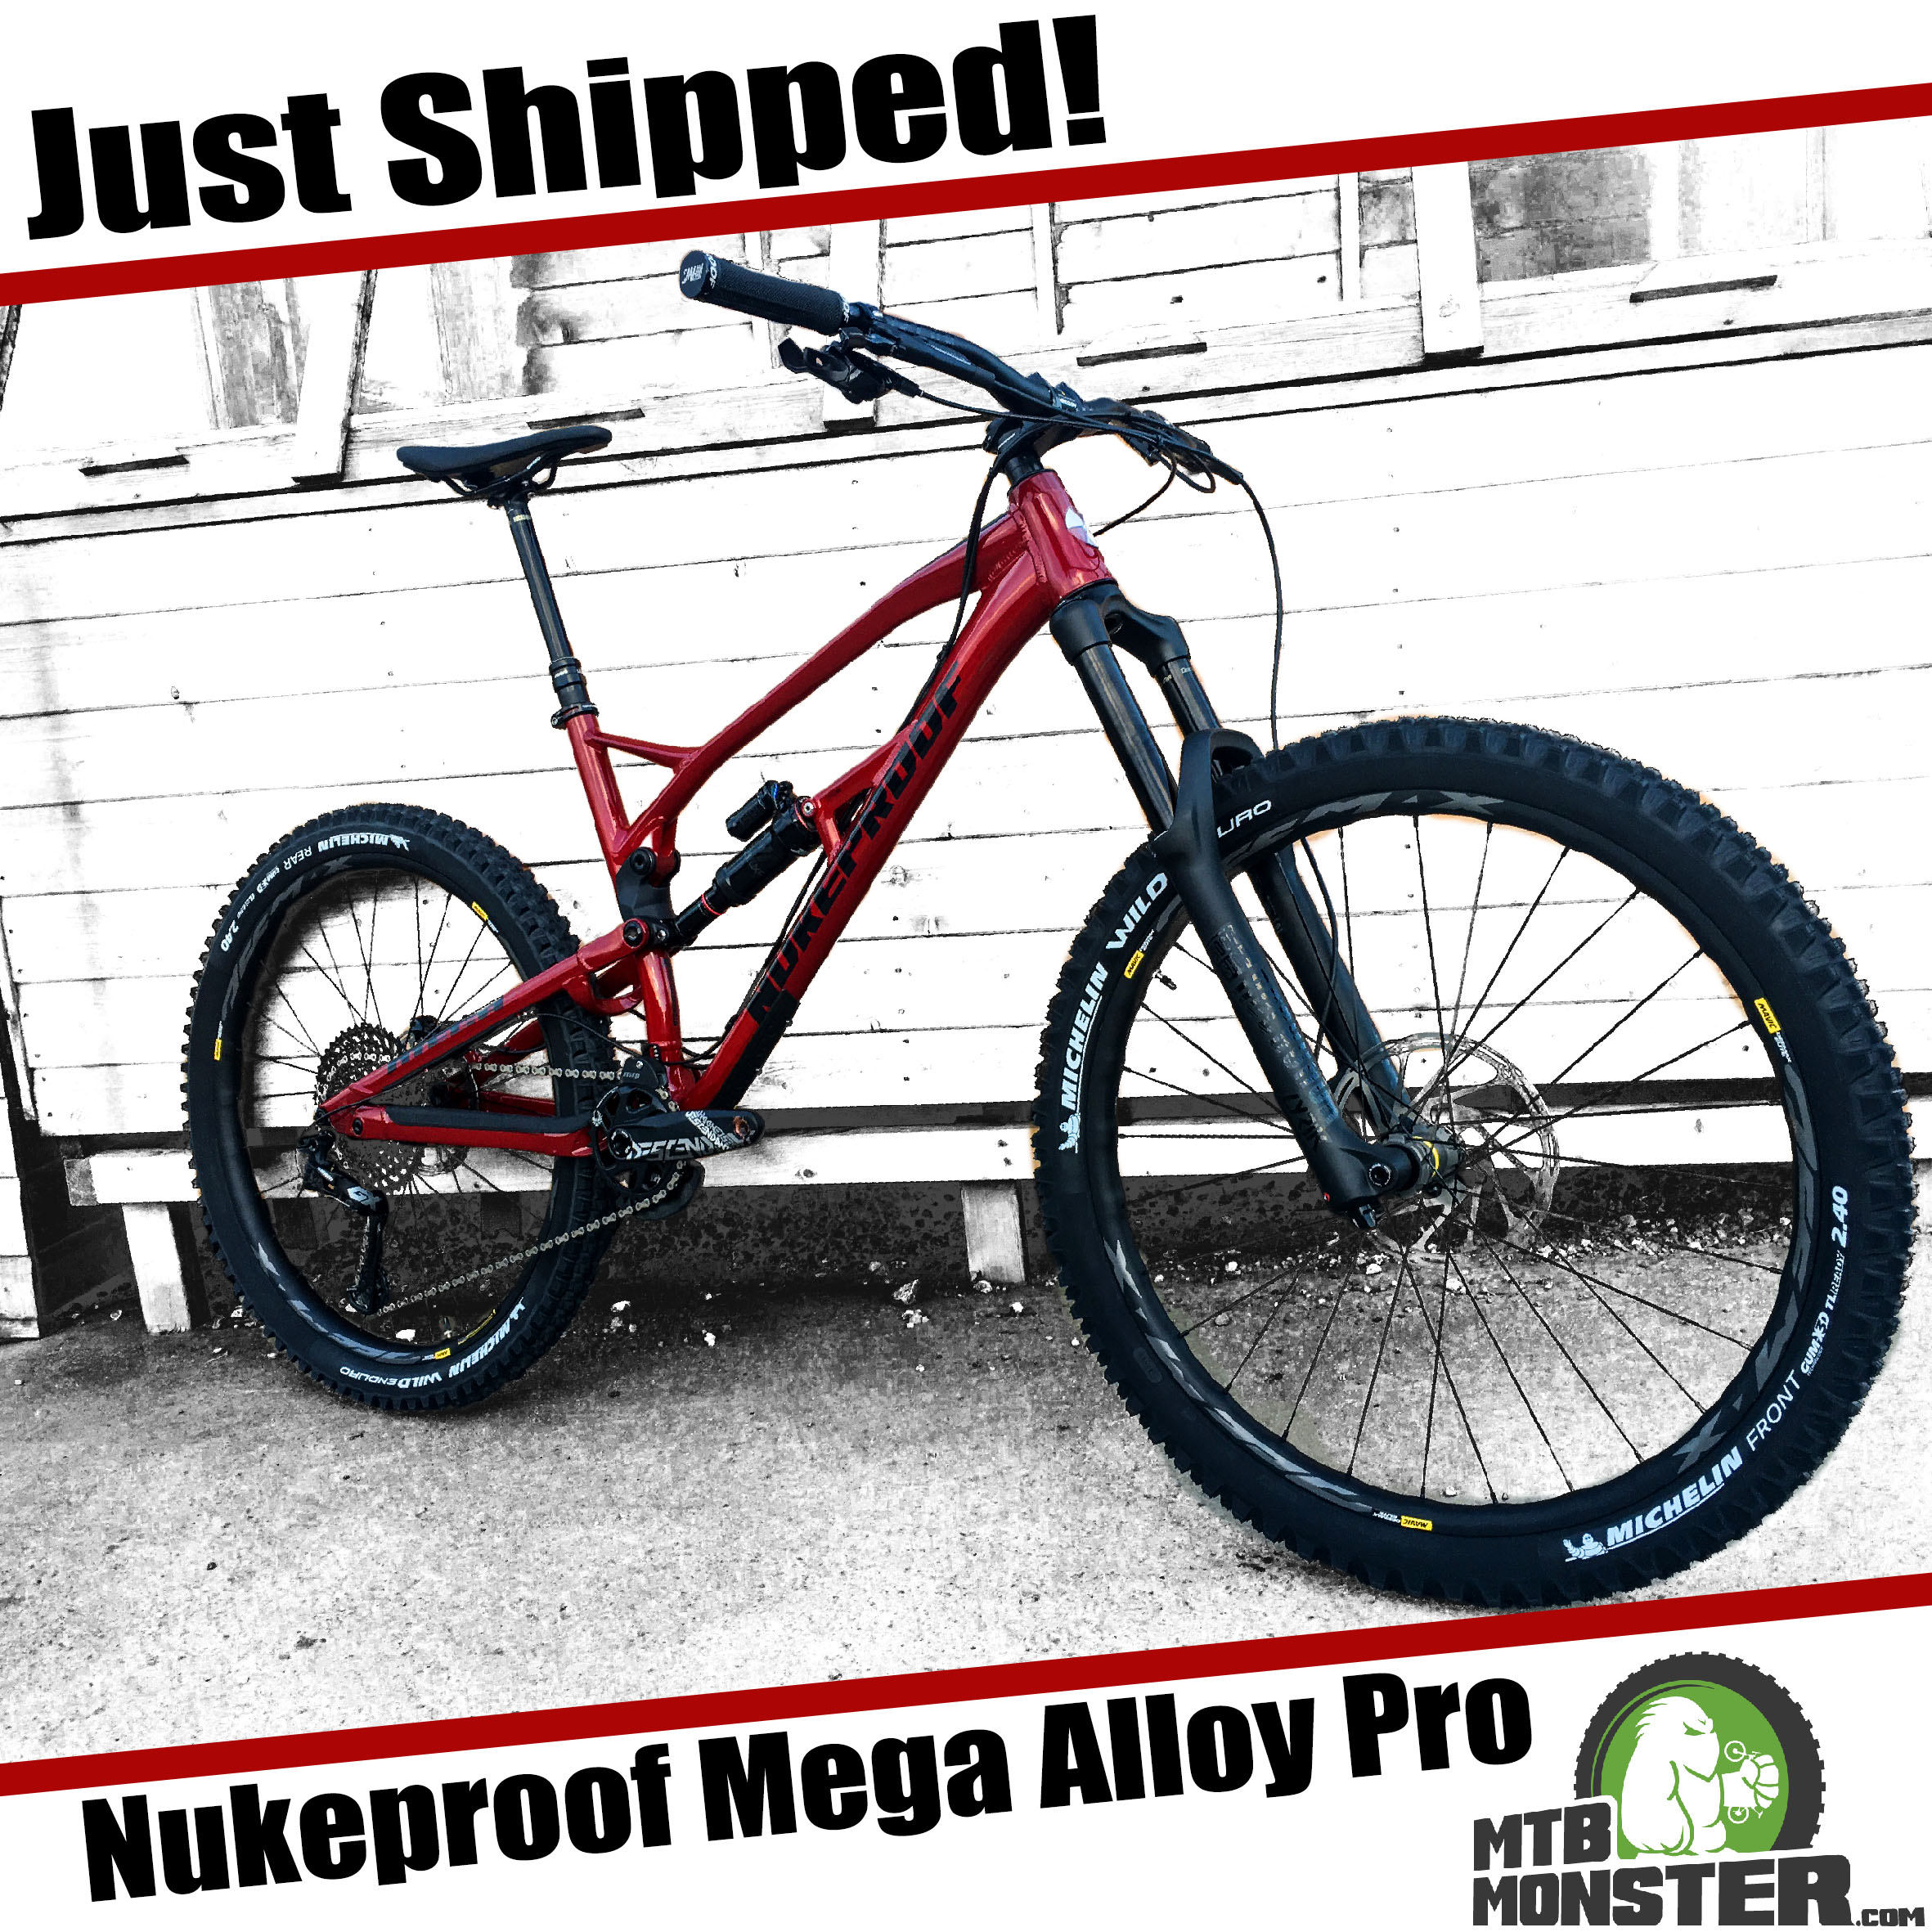 Nukeproof Mega Alloy Pro 2019